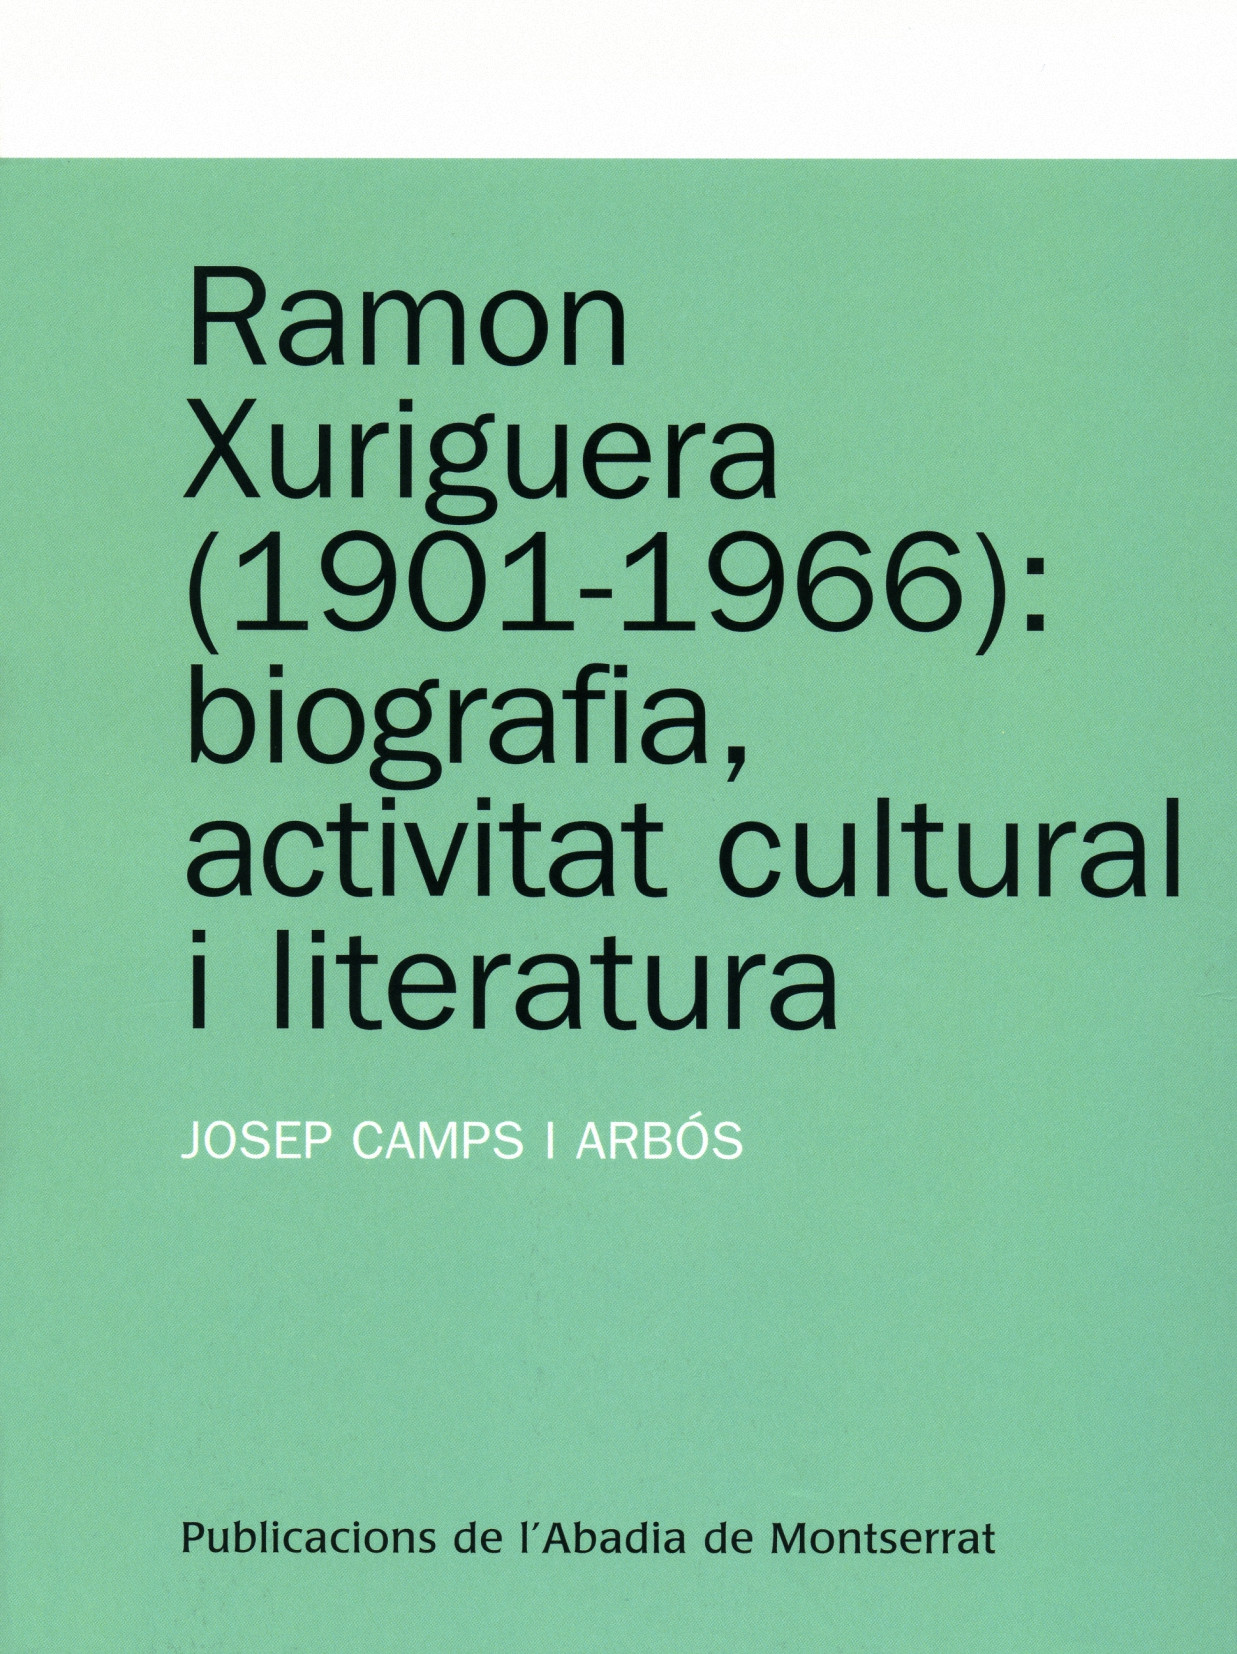 Josep Camps i Arbós